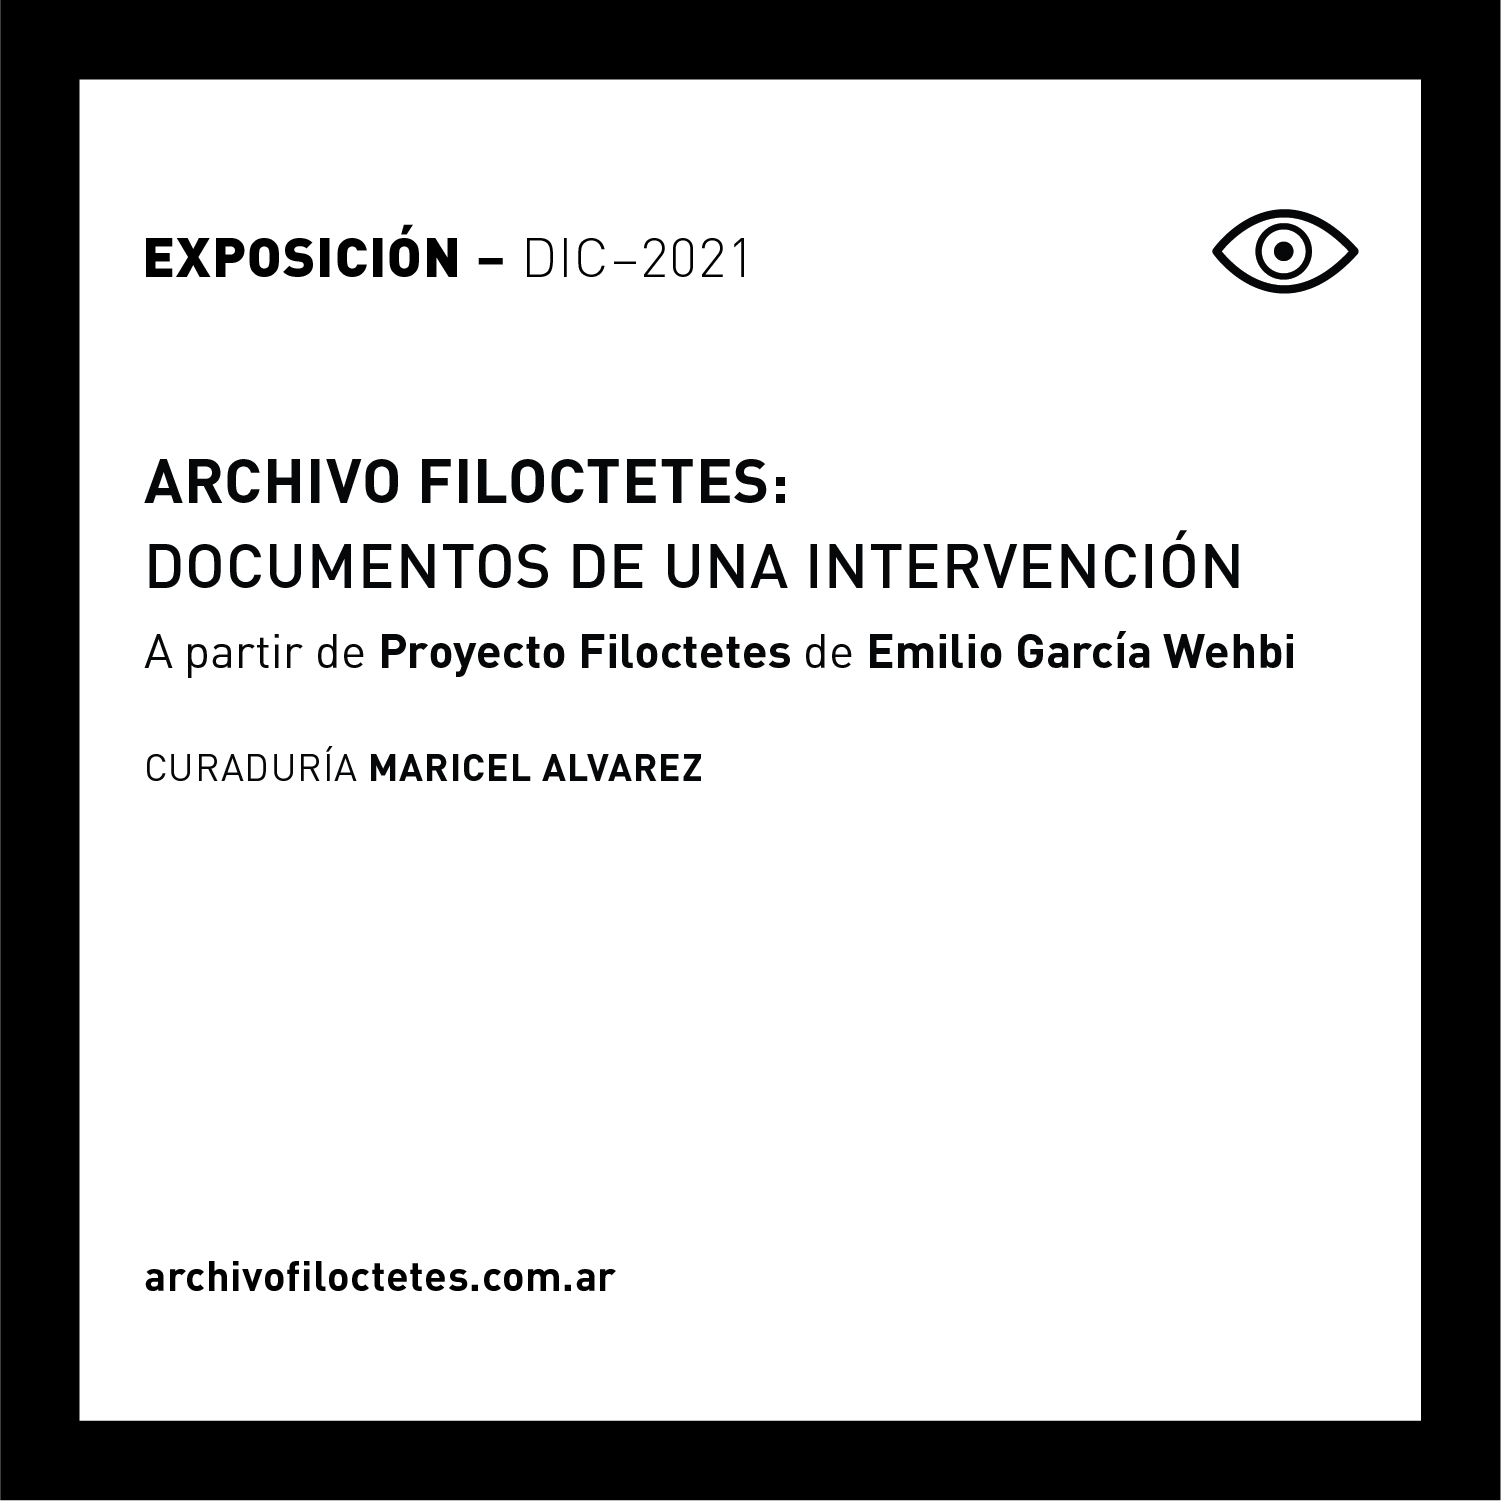 ARCHIVO FILOCTETES: DOCUMENTOS DE UNA INTERVENCIÓN